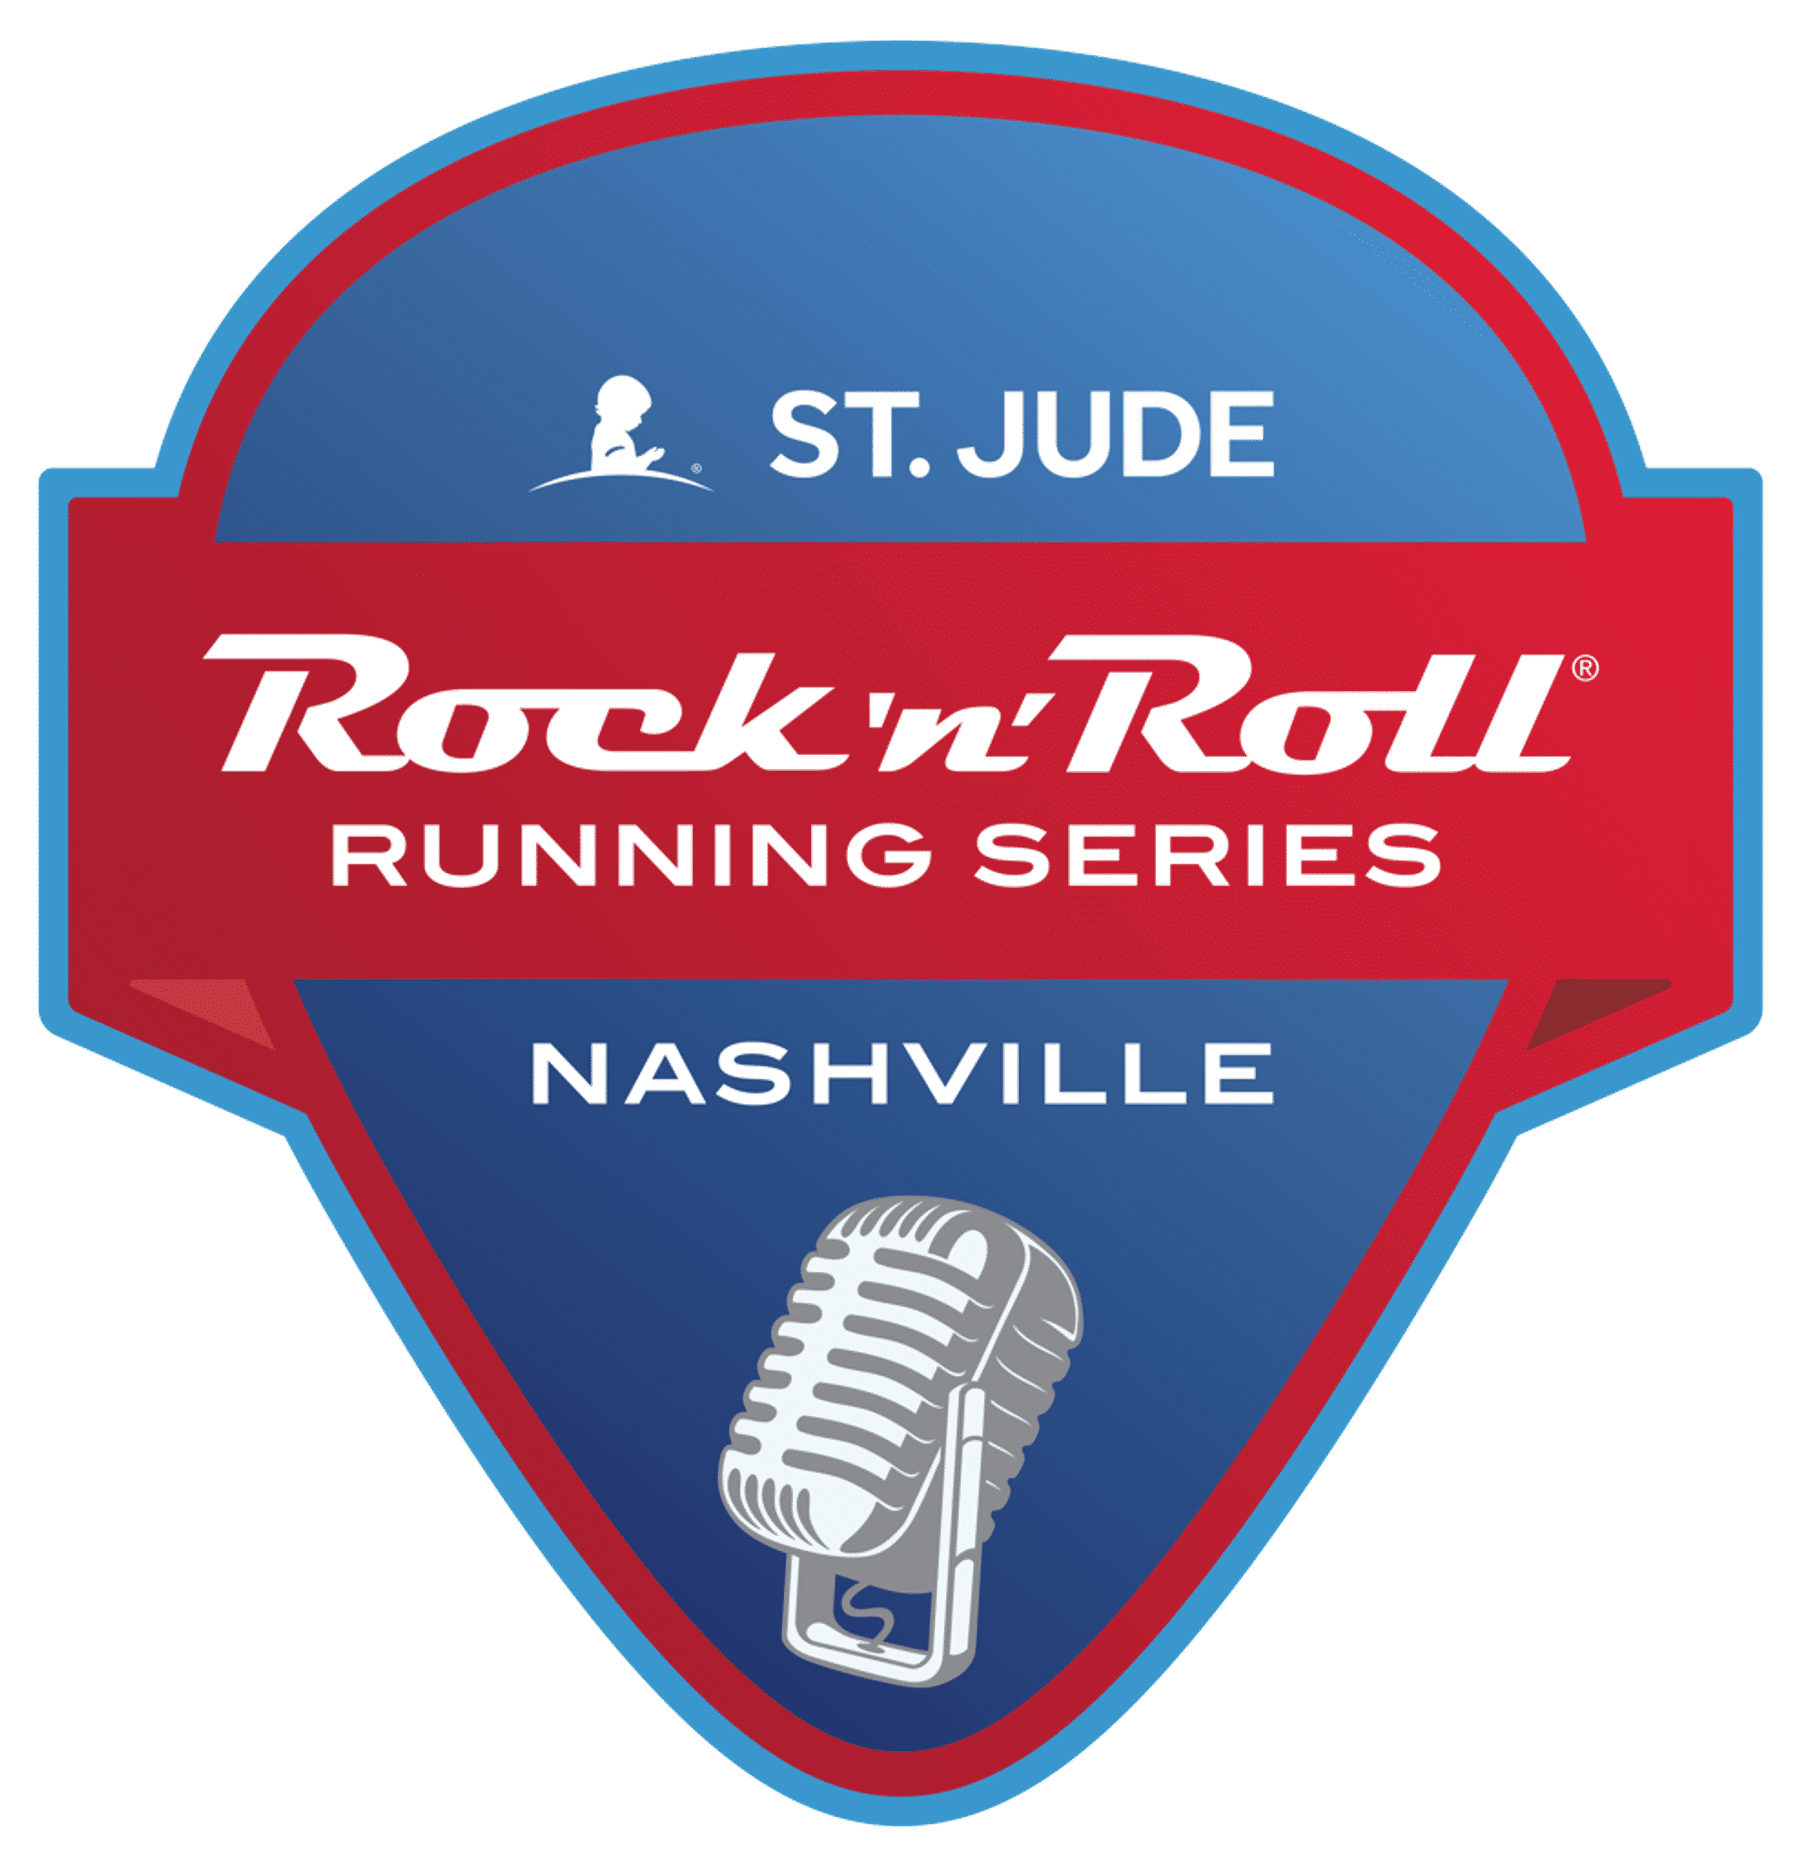 St. Jude Rock 'n' Roll Marathon & Half Marathon Downtown Nashville